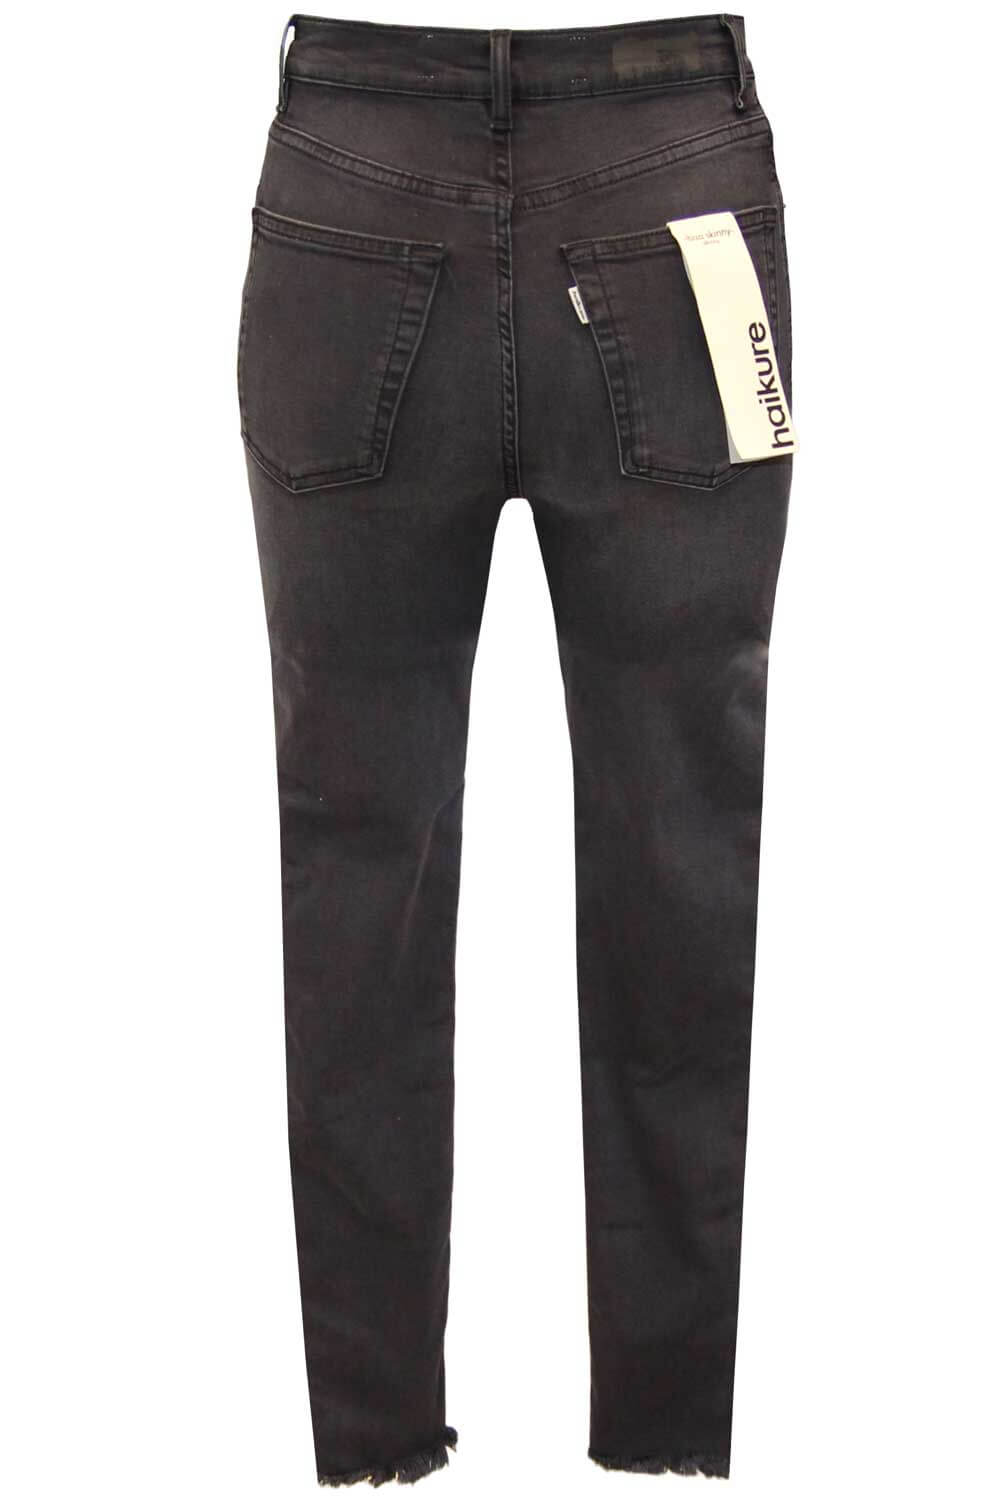 Jeans Ibiza vita alta - HAIKURE Pantaloni e jeans HAIKURE   